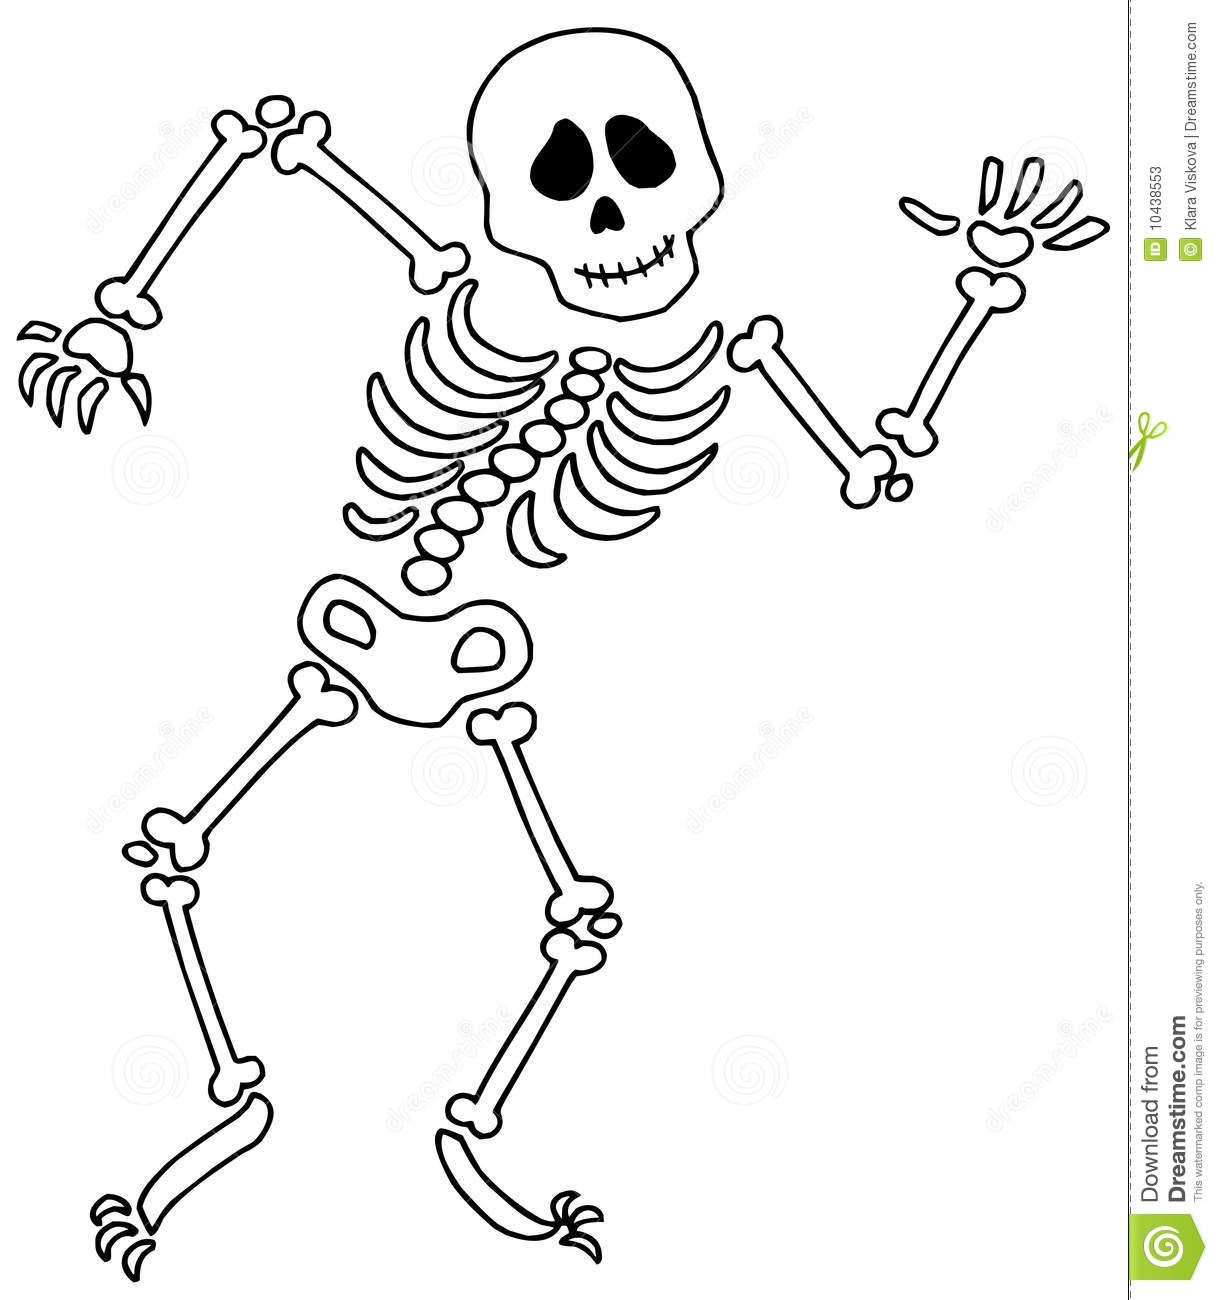 Skeleton clip art free free c